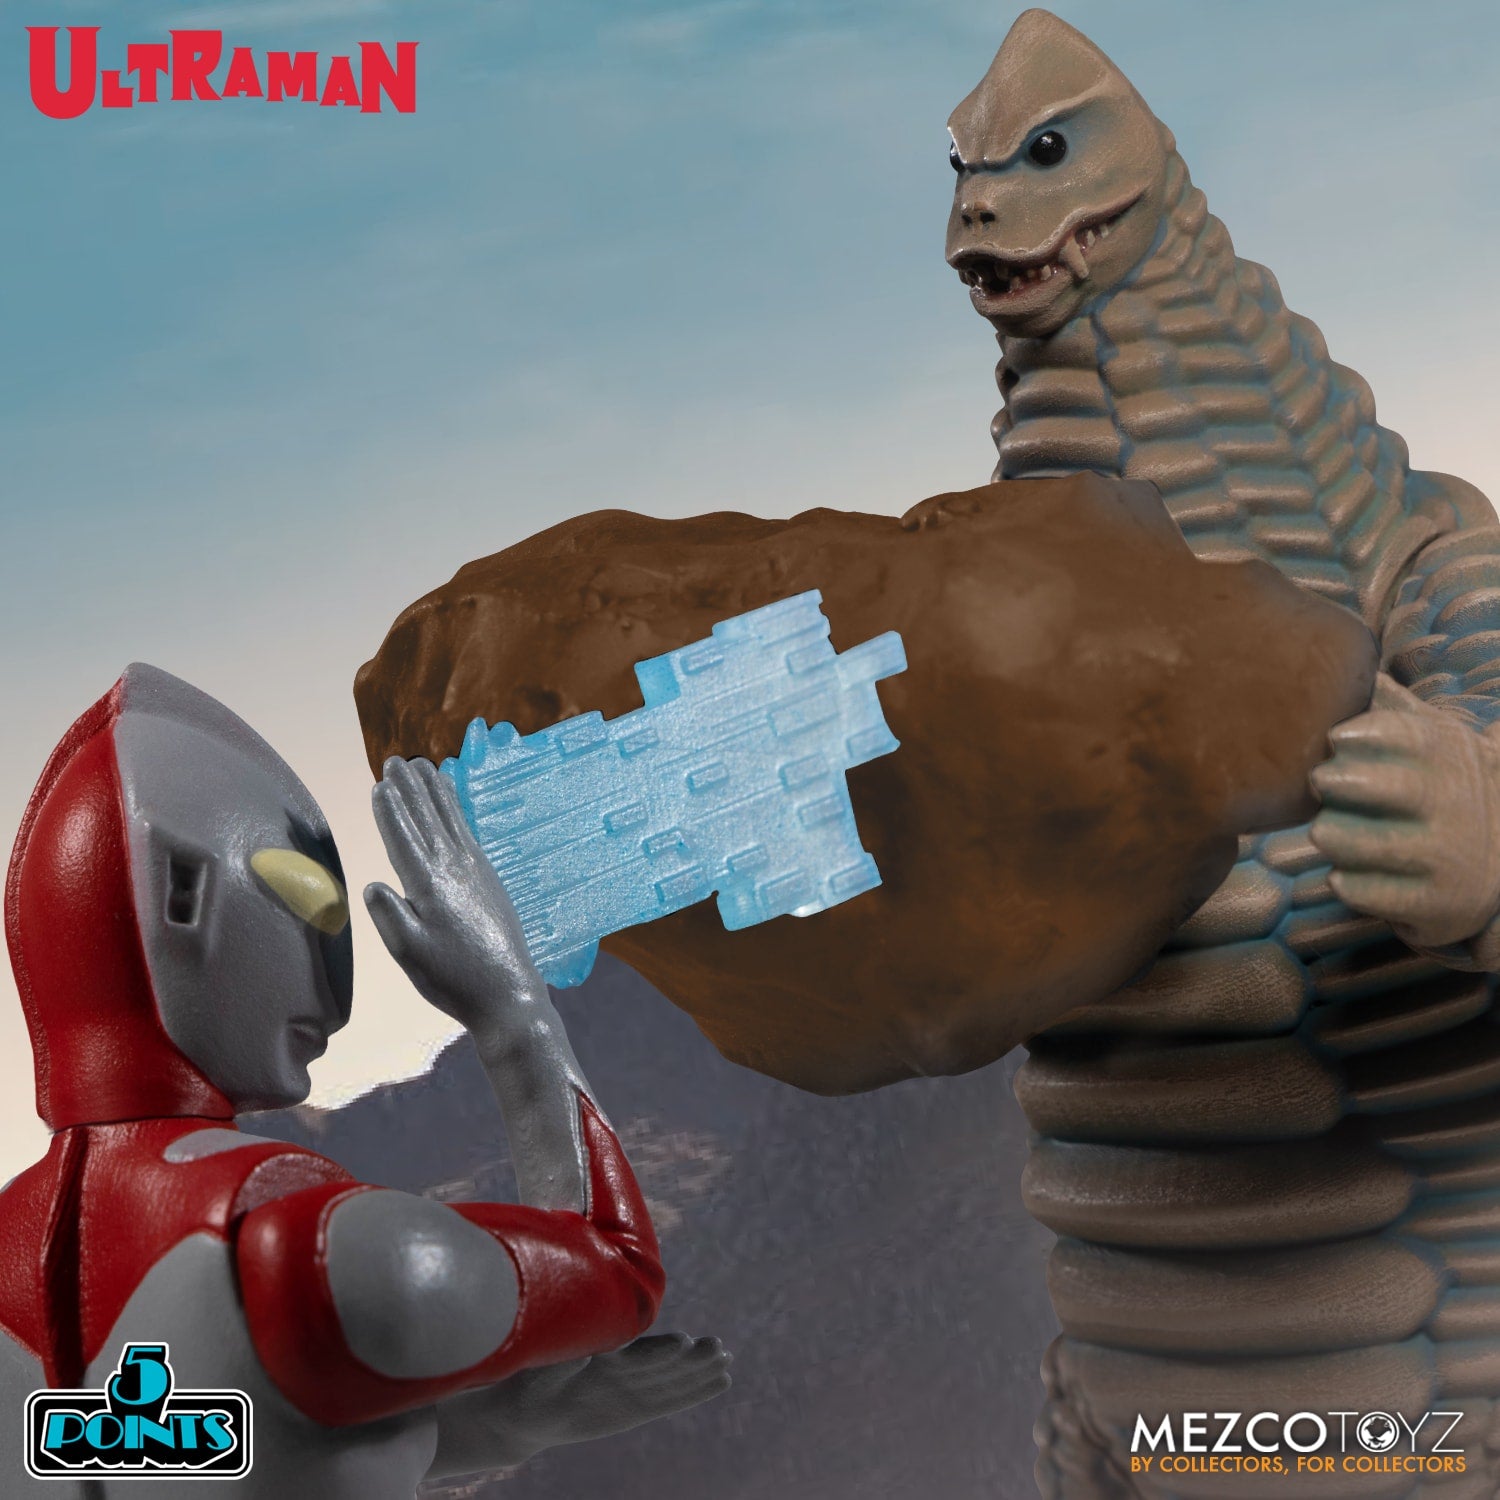 MEZCO TOYZ: 5 Points - Ultraman & Red King Boxed Set 3.75